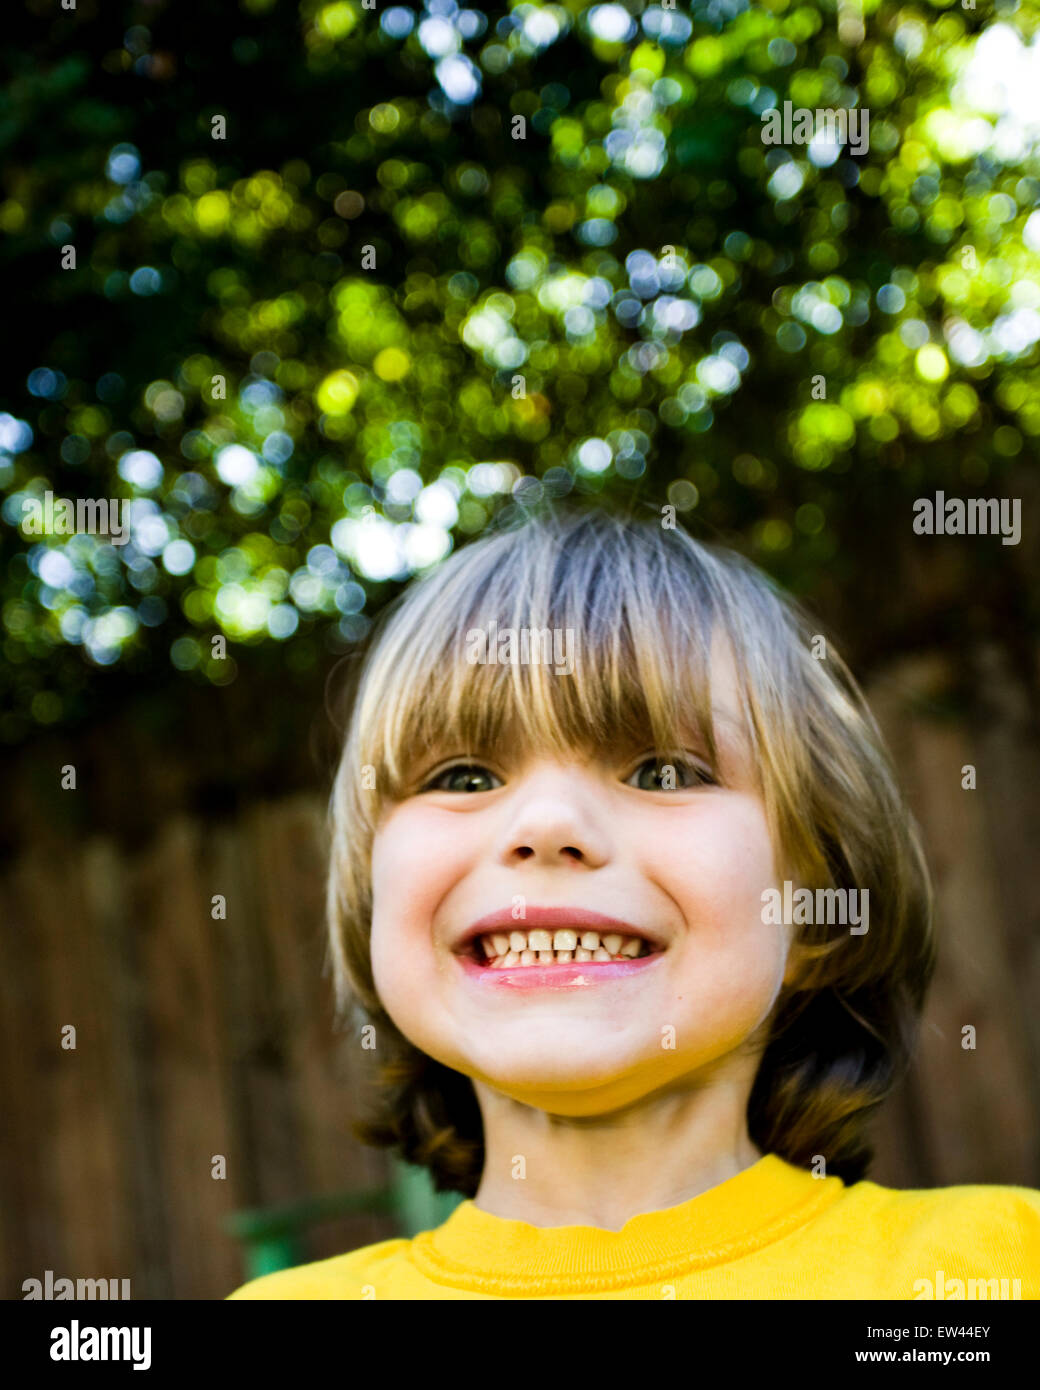 young cute boy playing in backyard Stock Photo